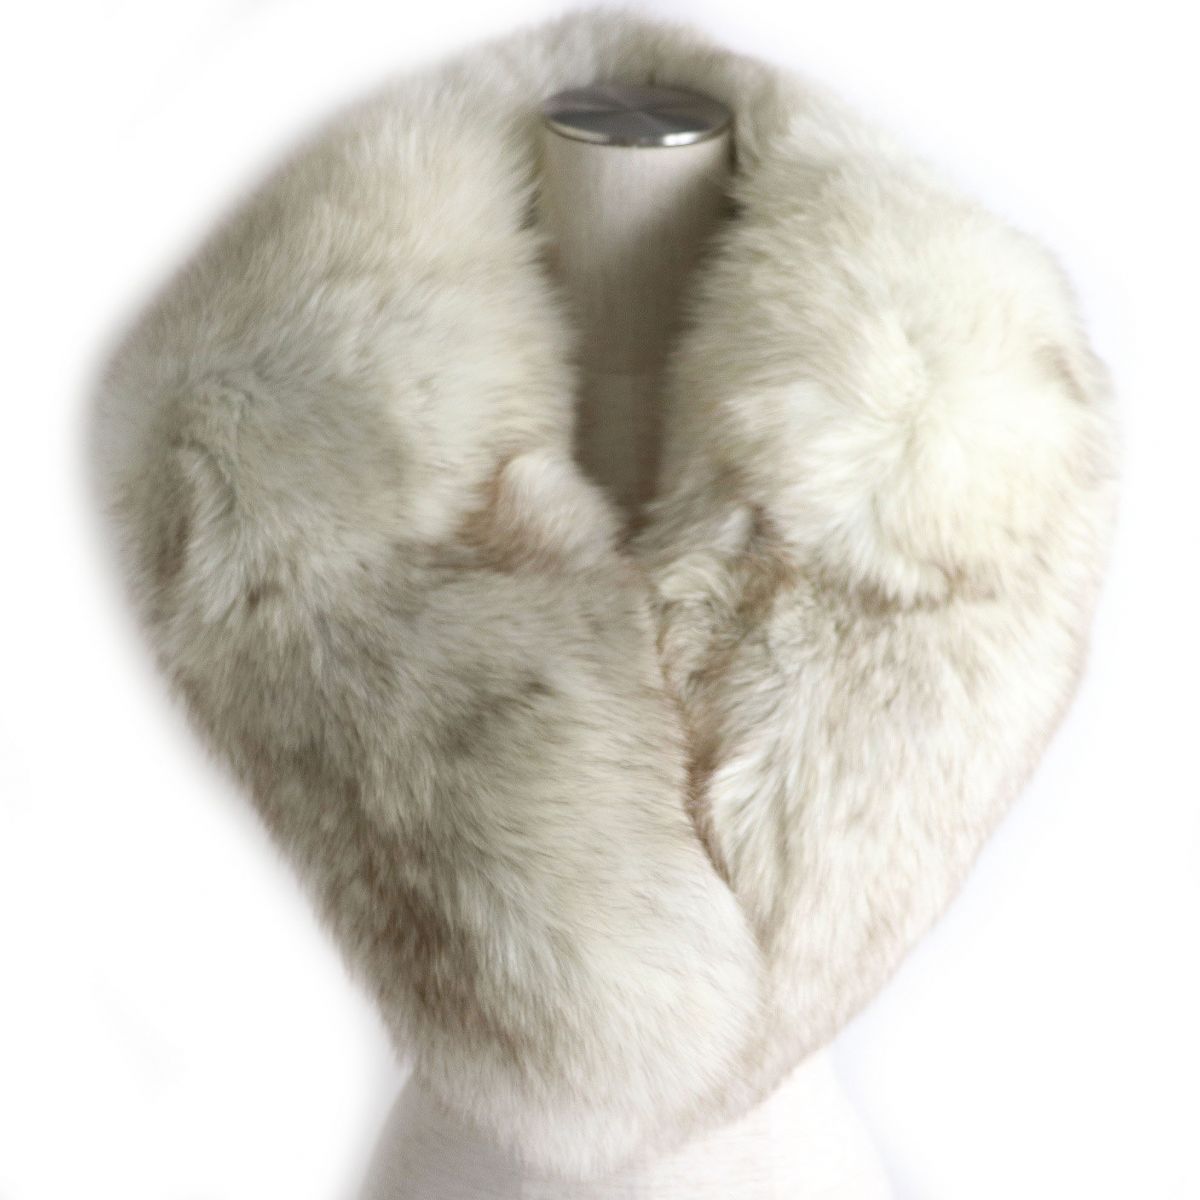 未使用品 SAGA FOX サガフォックス 一部予約販売 本毛皮ショール ティペット ホワイト×ブラウン ボリューム 毛質柔らか 本日の目玉